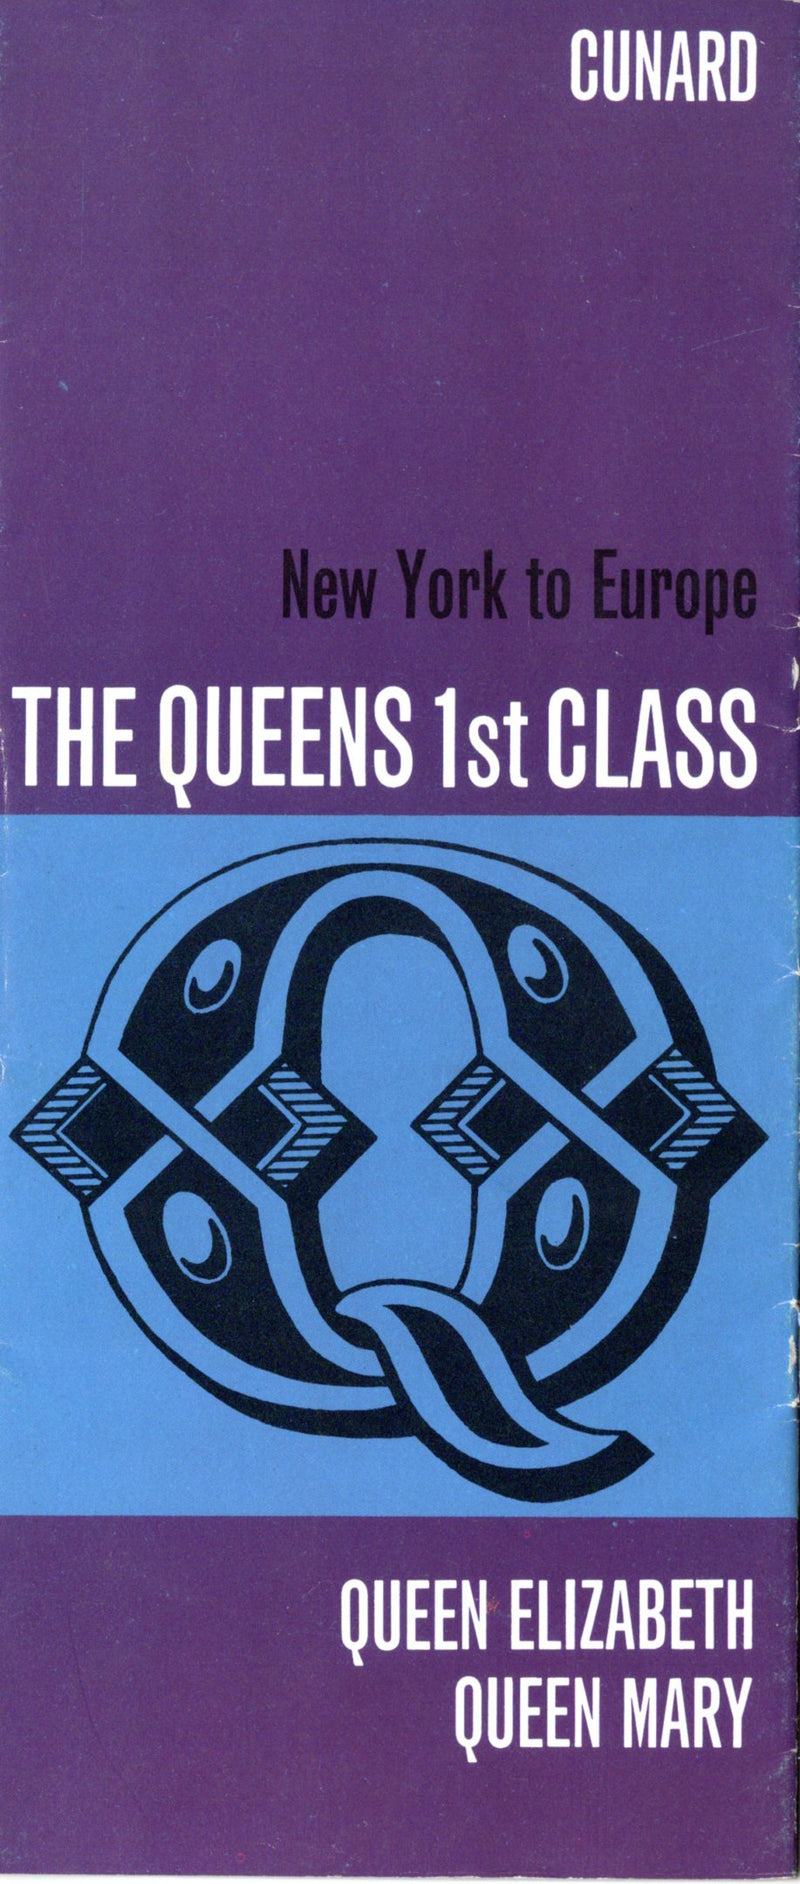 QUEEN MARY & QUEEN ELIZABETH - "Queens 1st Class" interiors brochure